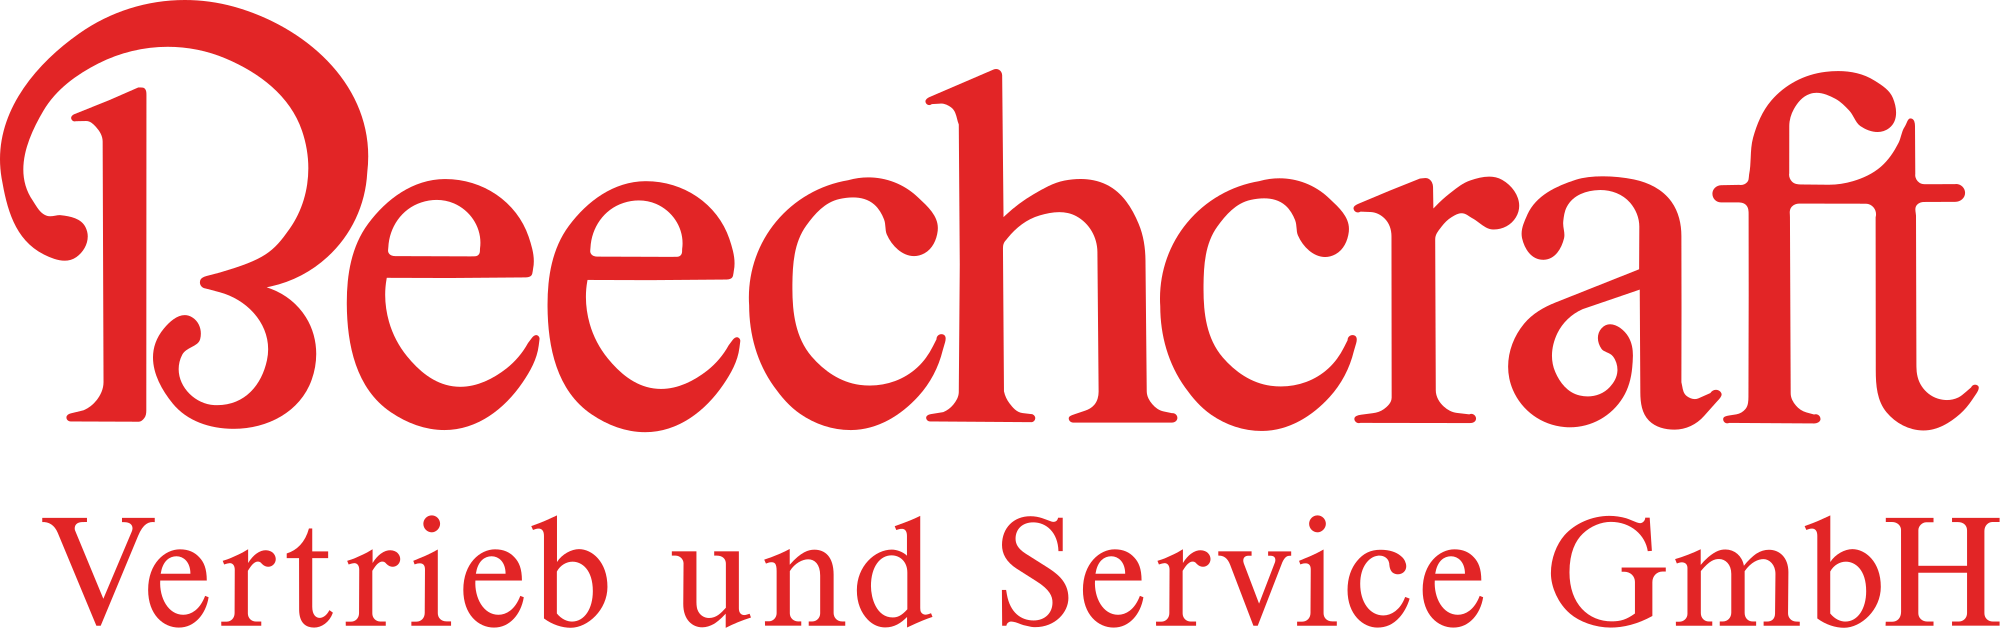 Beechcraft Logo - Beechcraft logo and slogan.svg